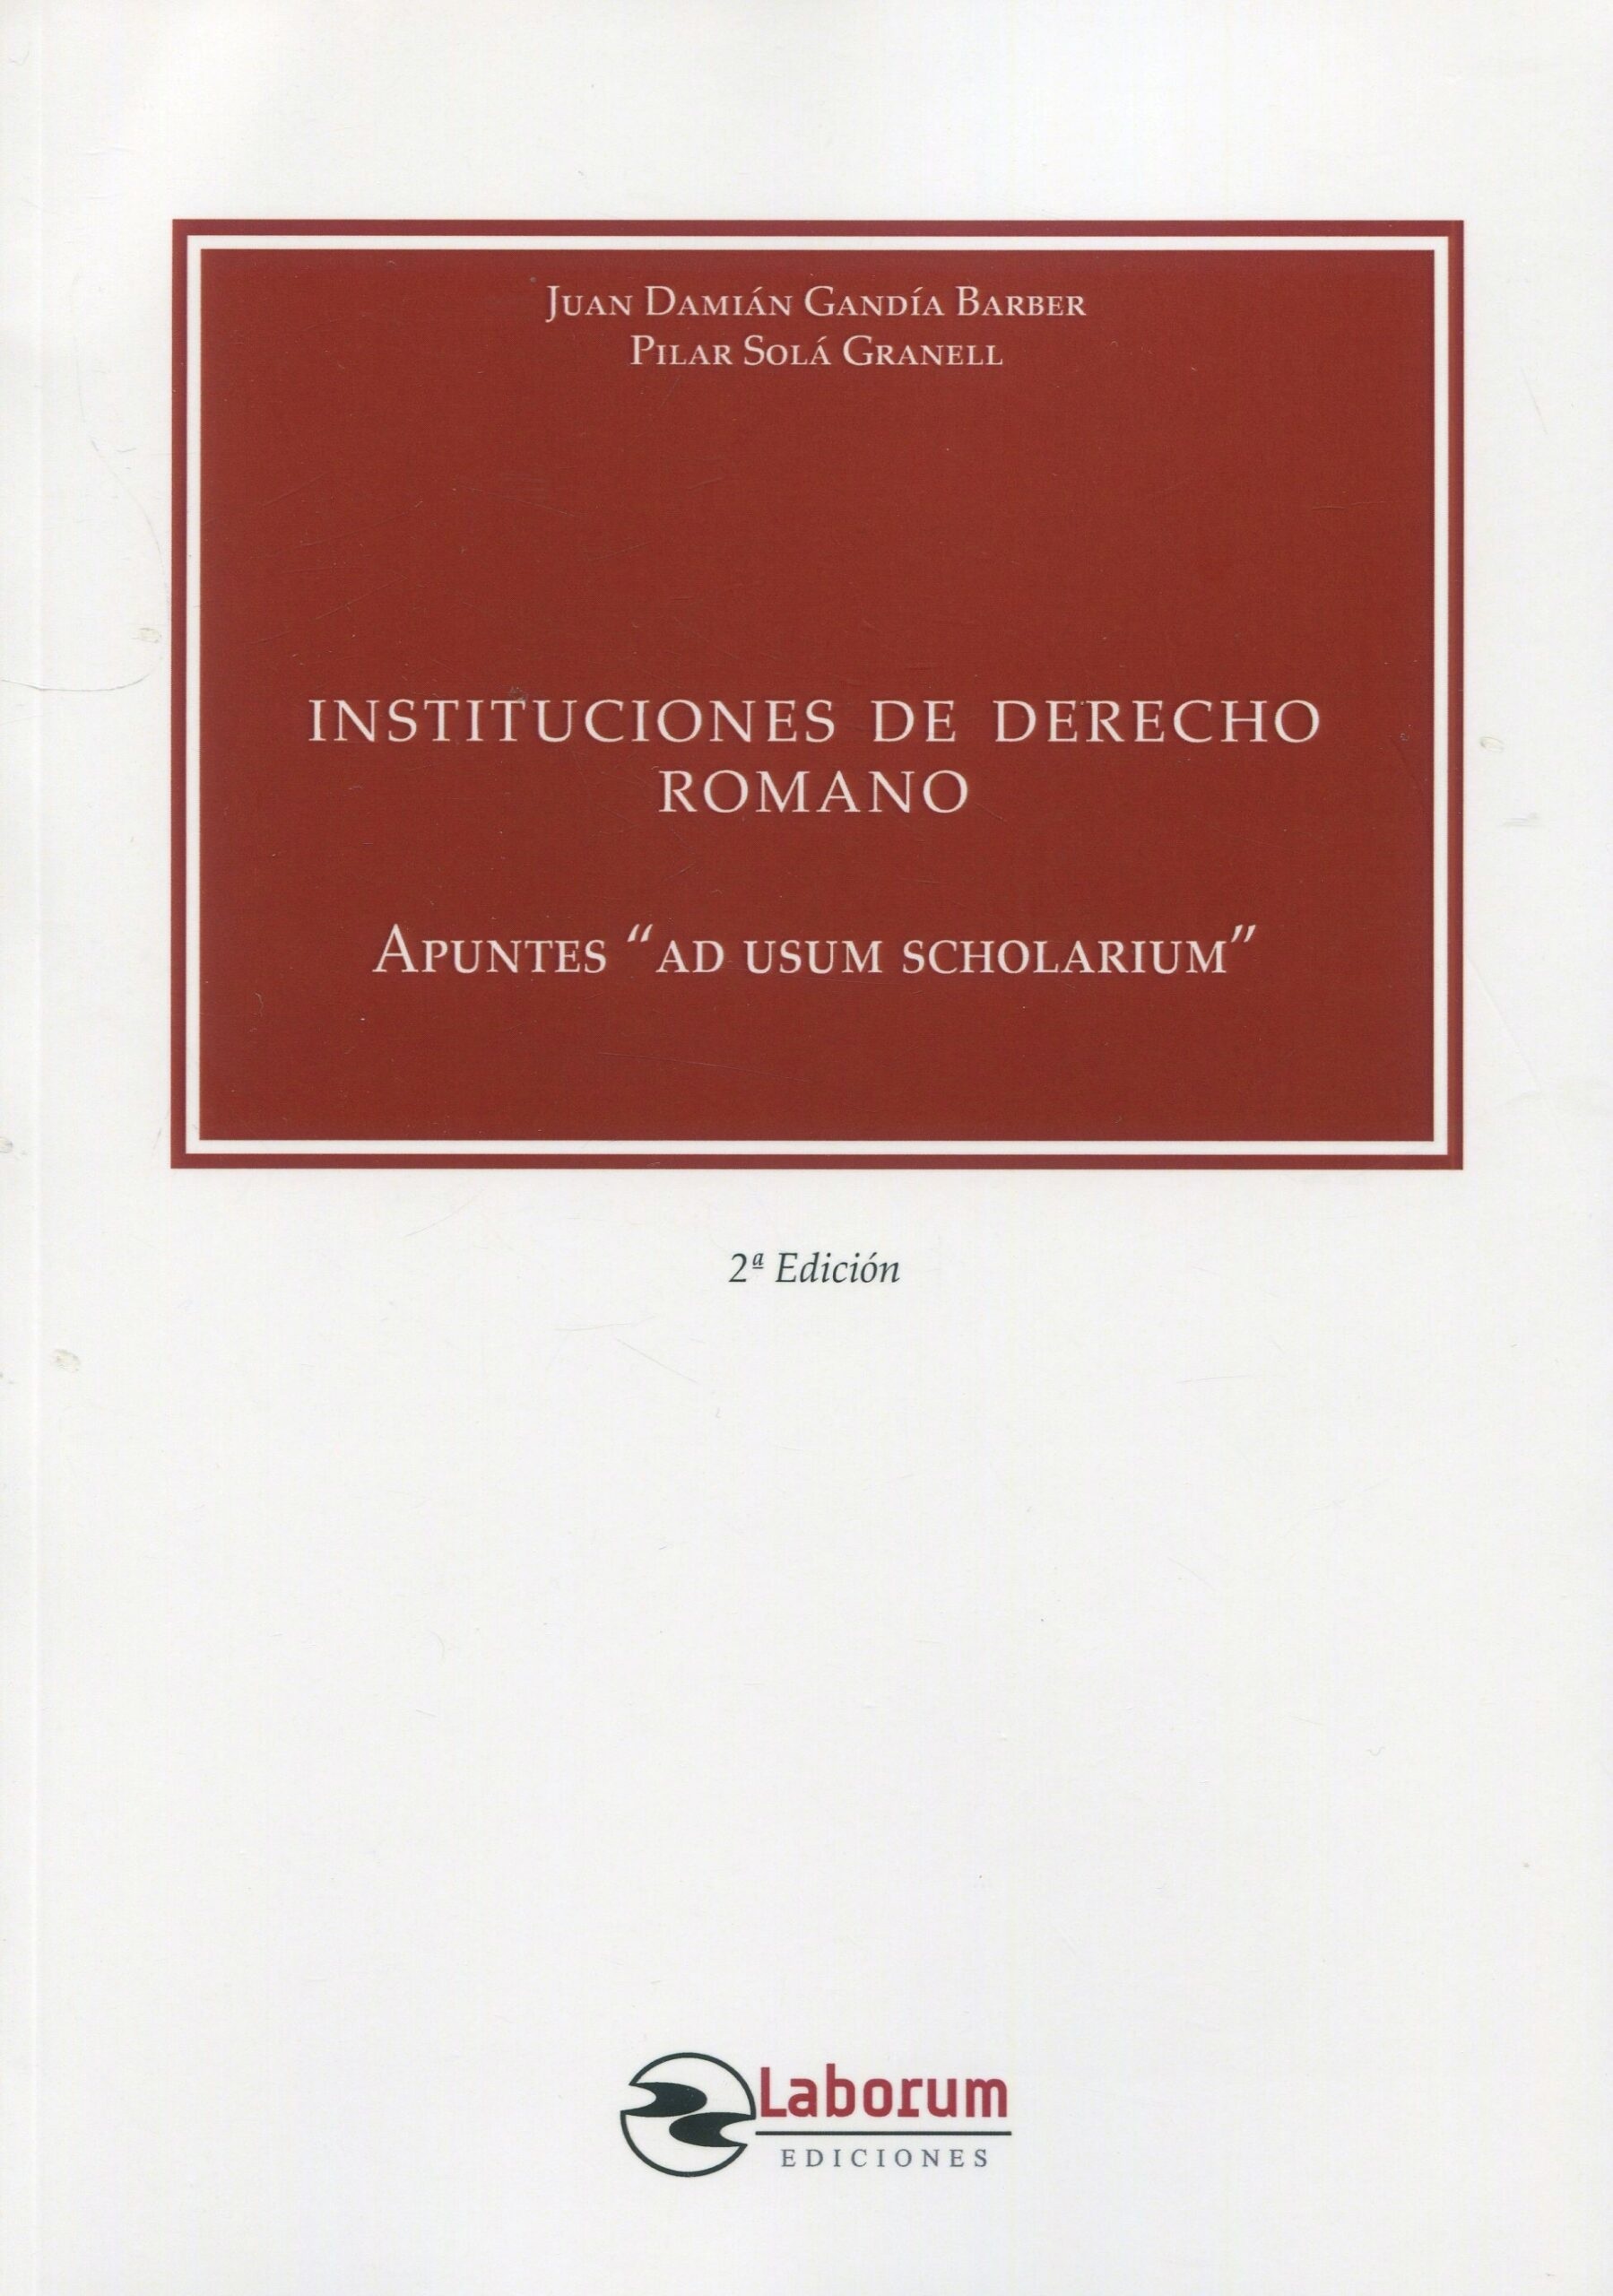 Instituciones de derecho romano 2022 Apuntes "ad usum scholarium"